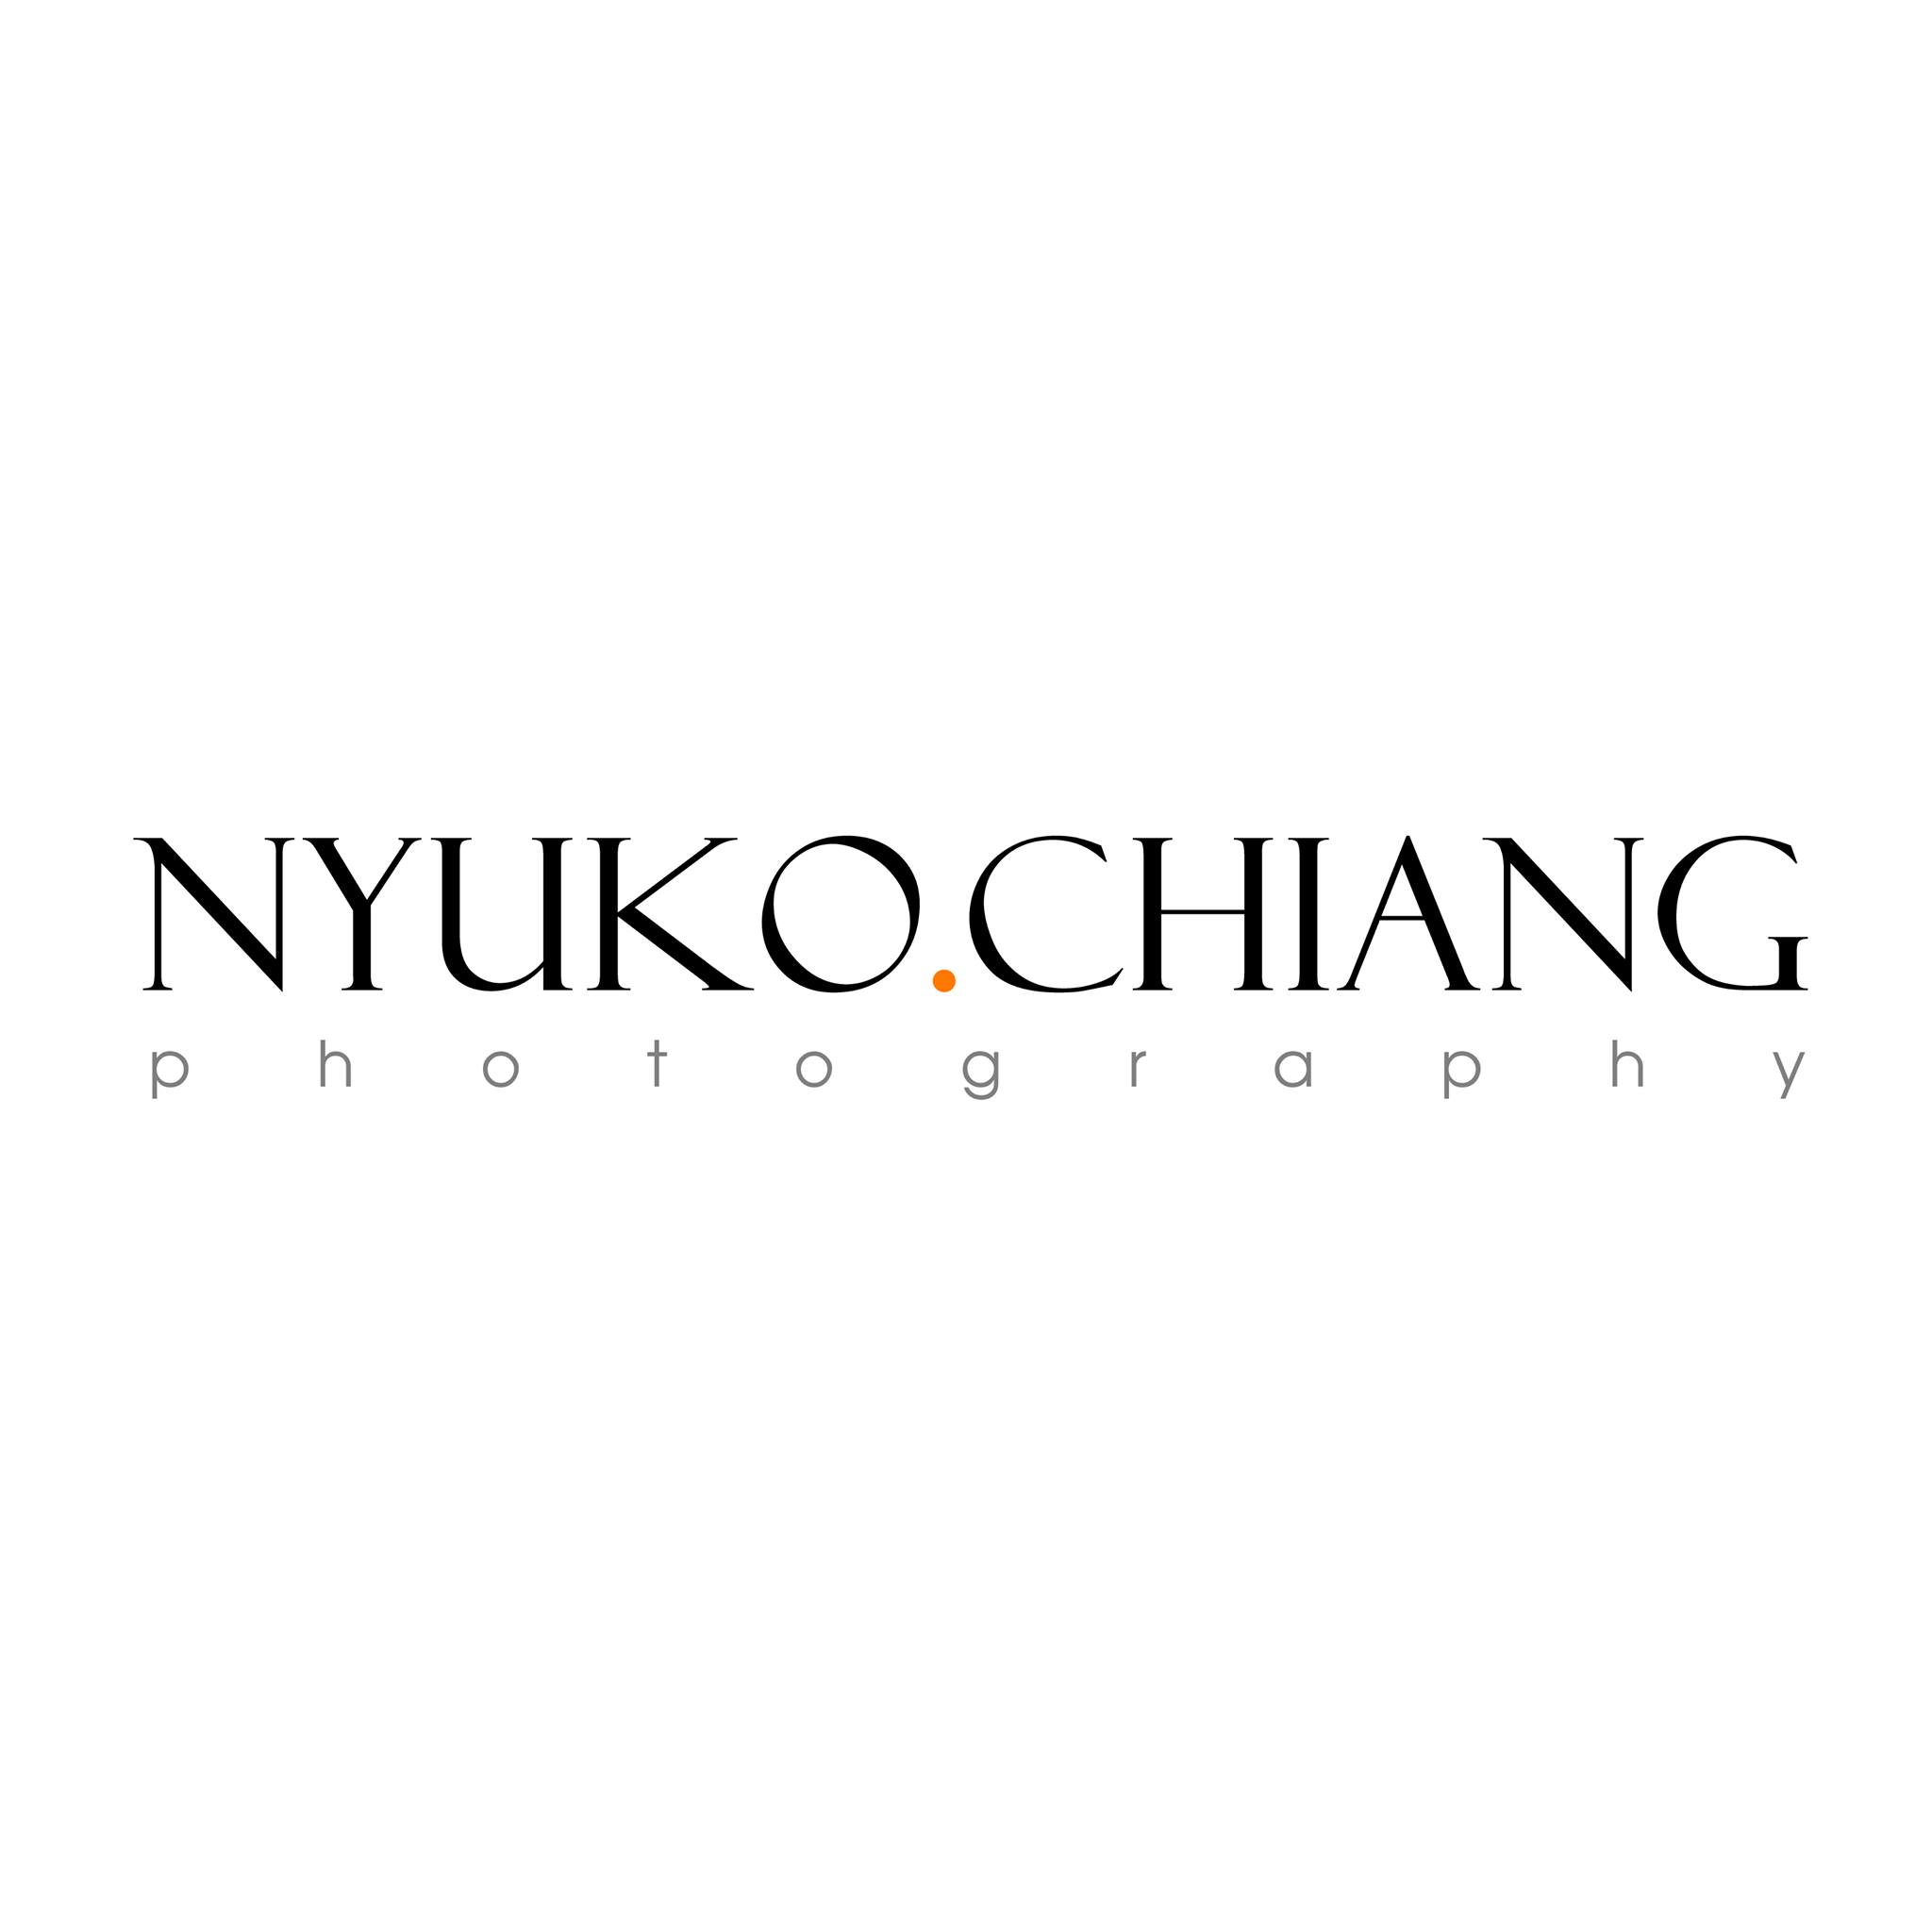 NYUKO CHIANG Photography